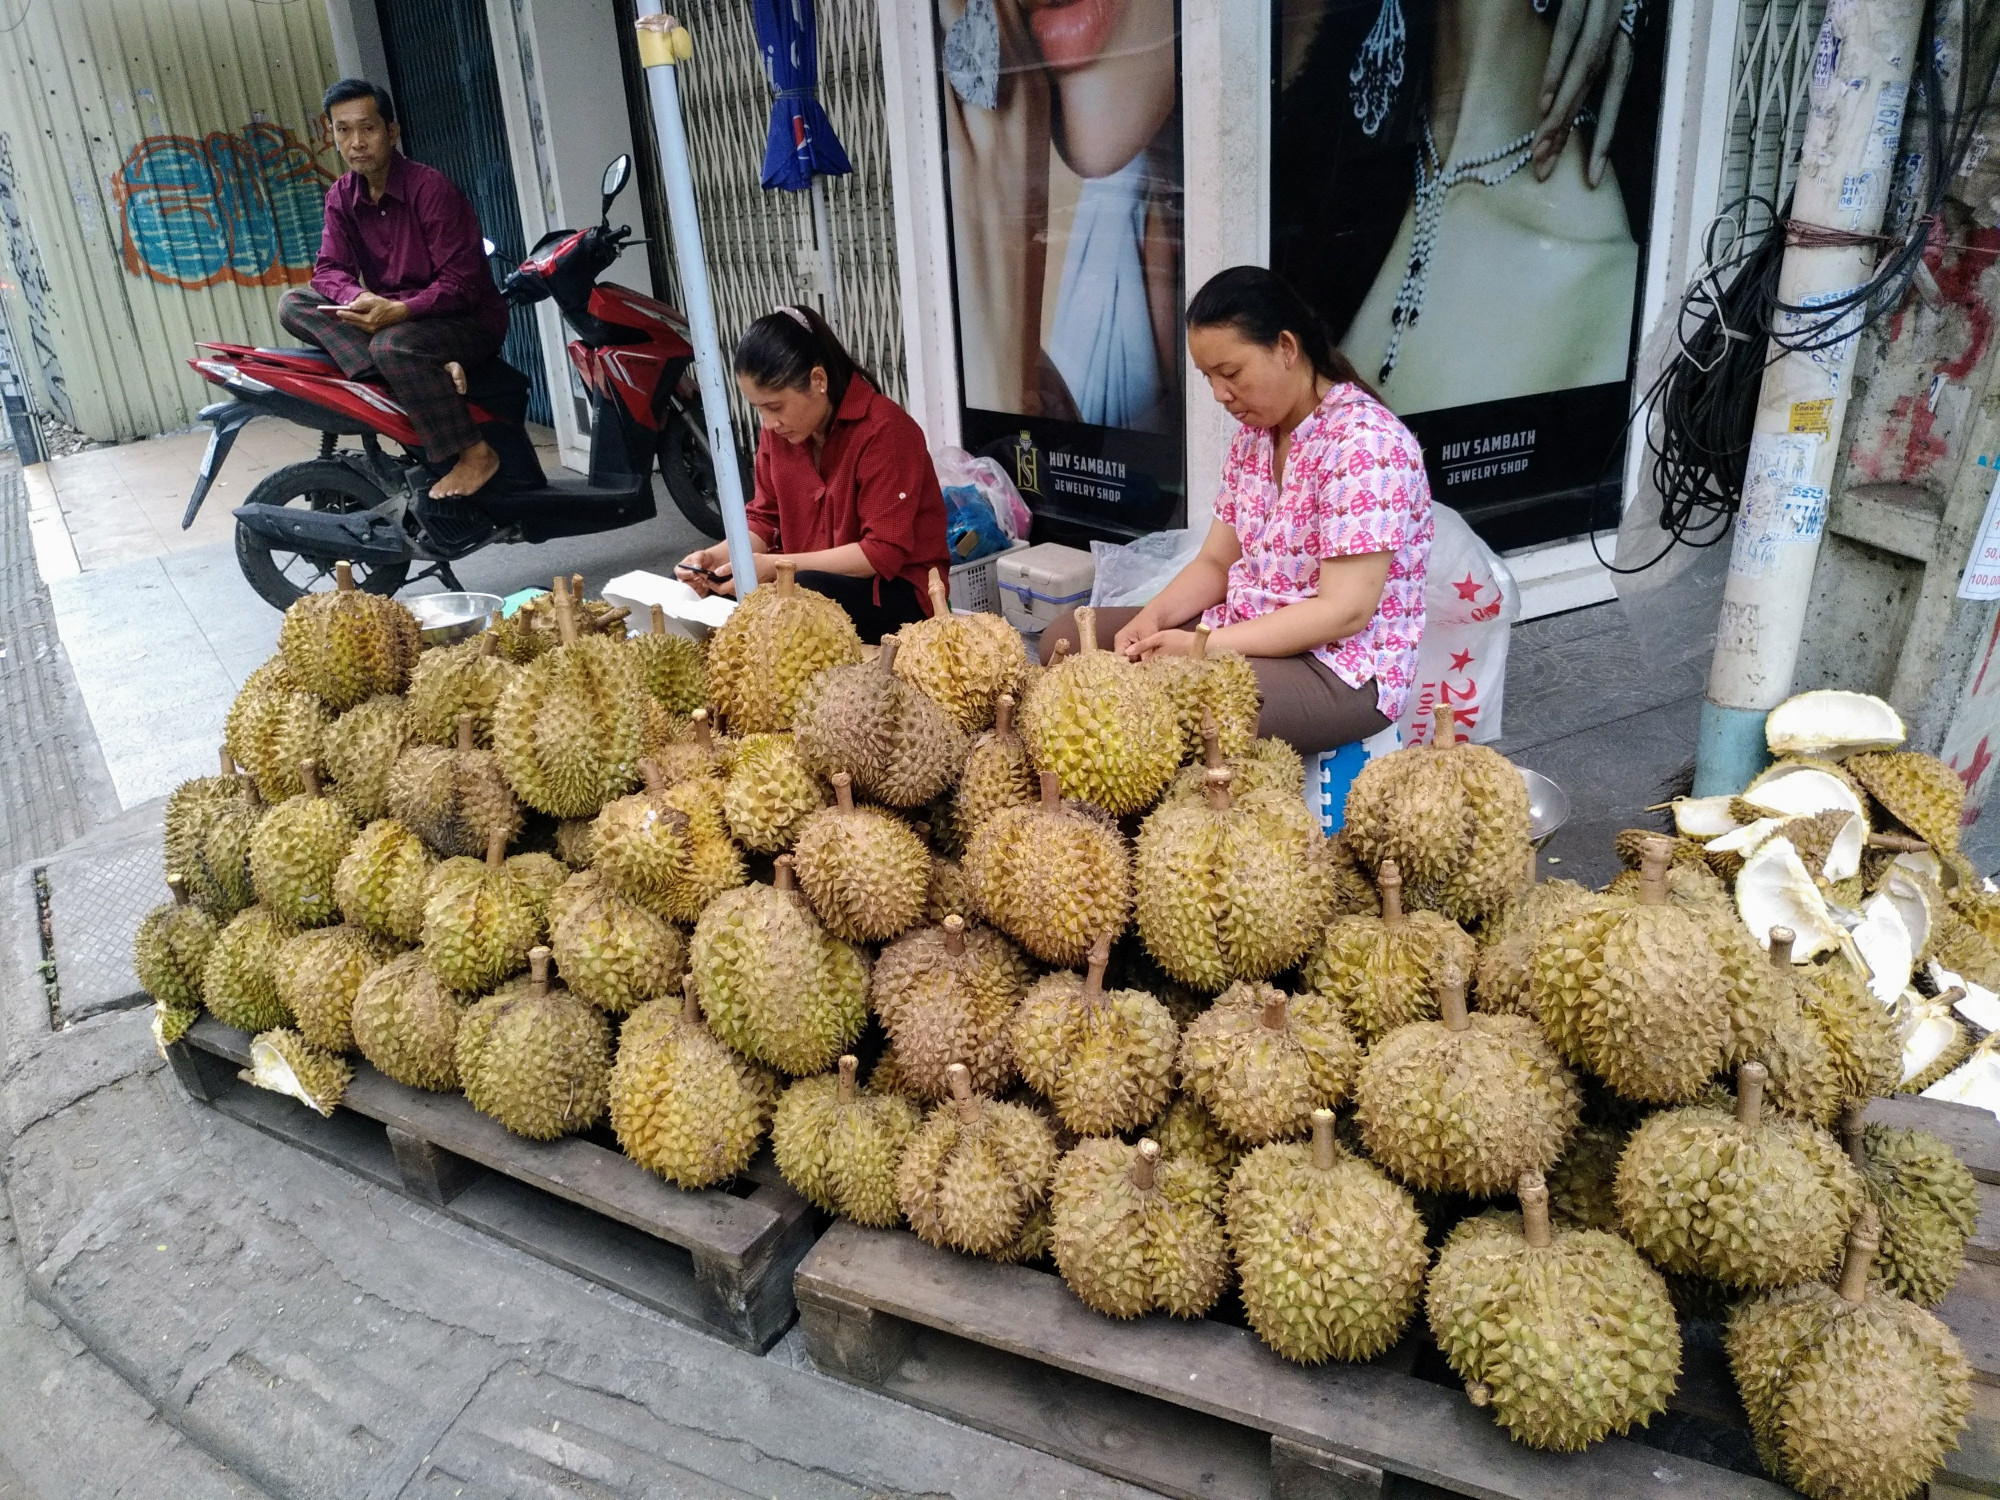 Durian / Phnom Penh, Cambodia